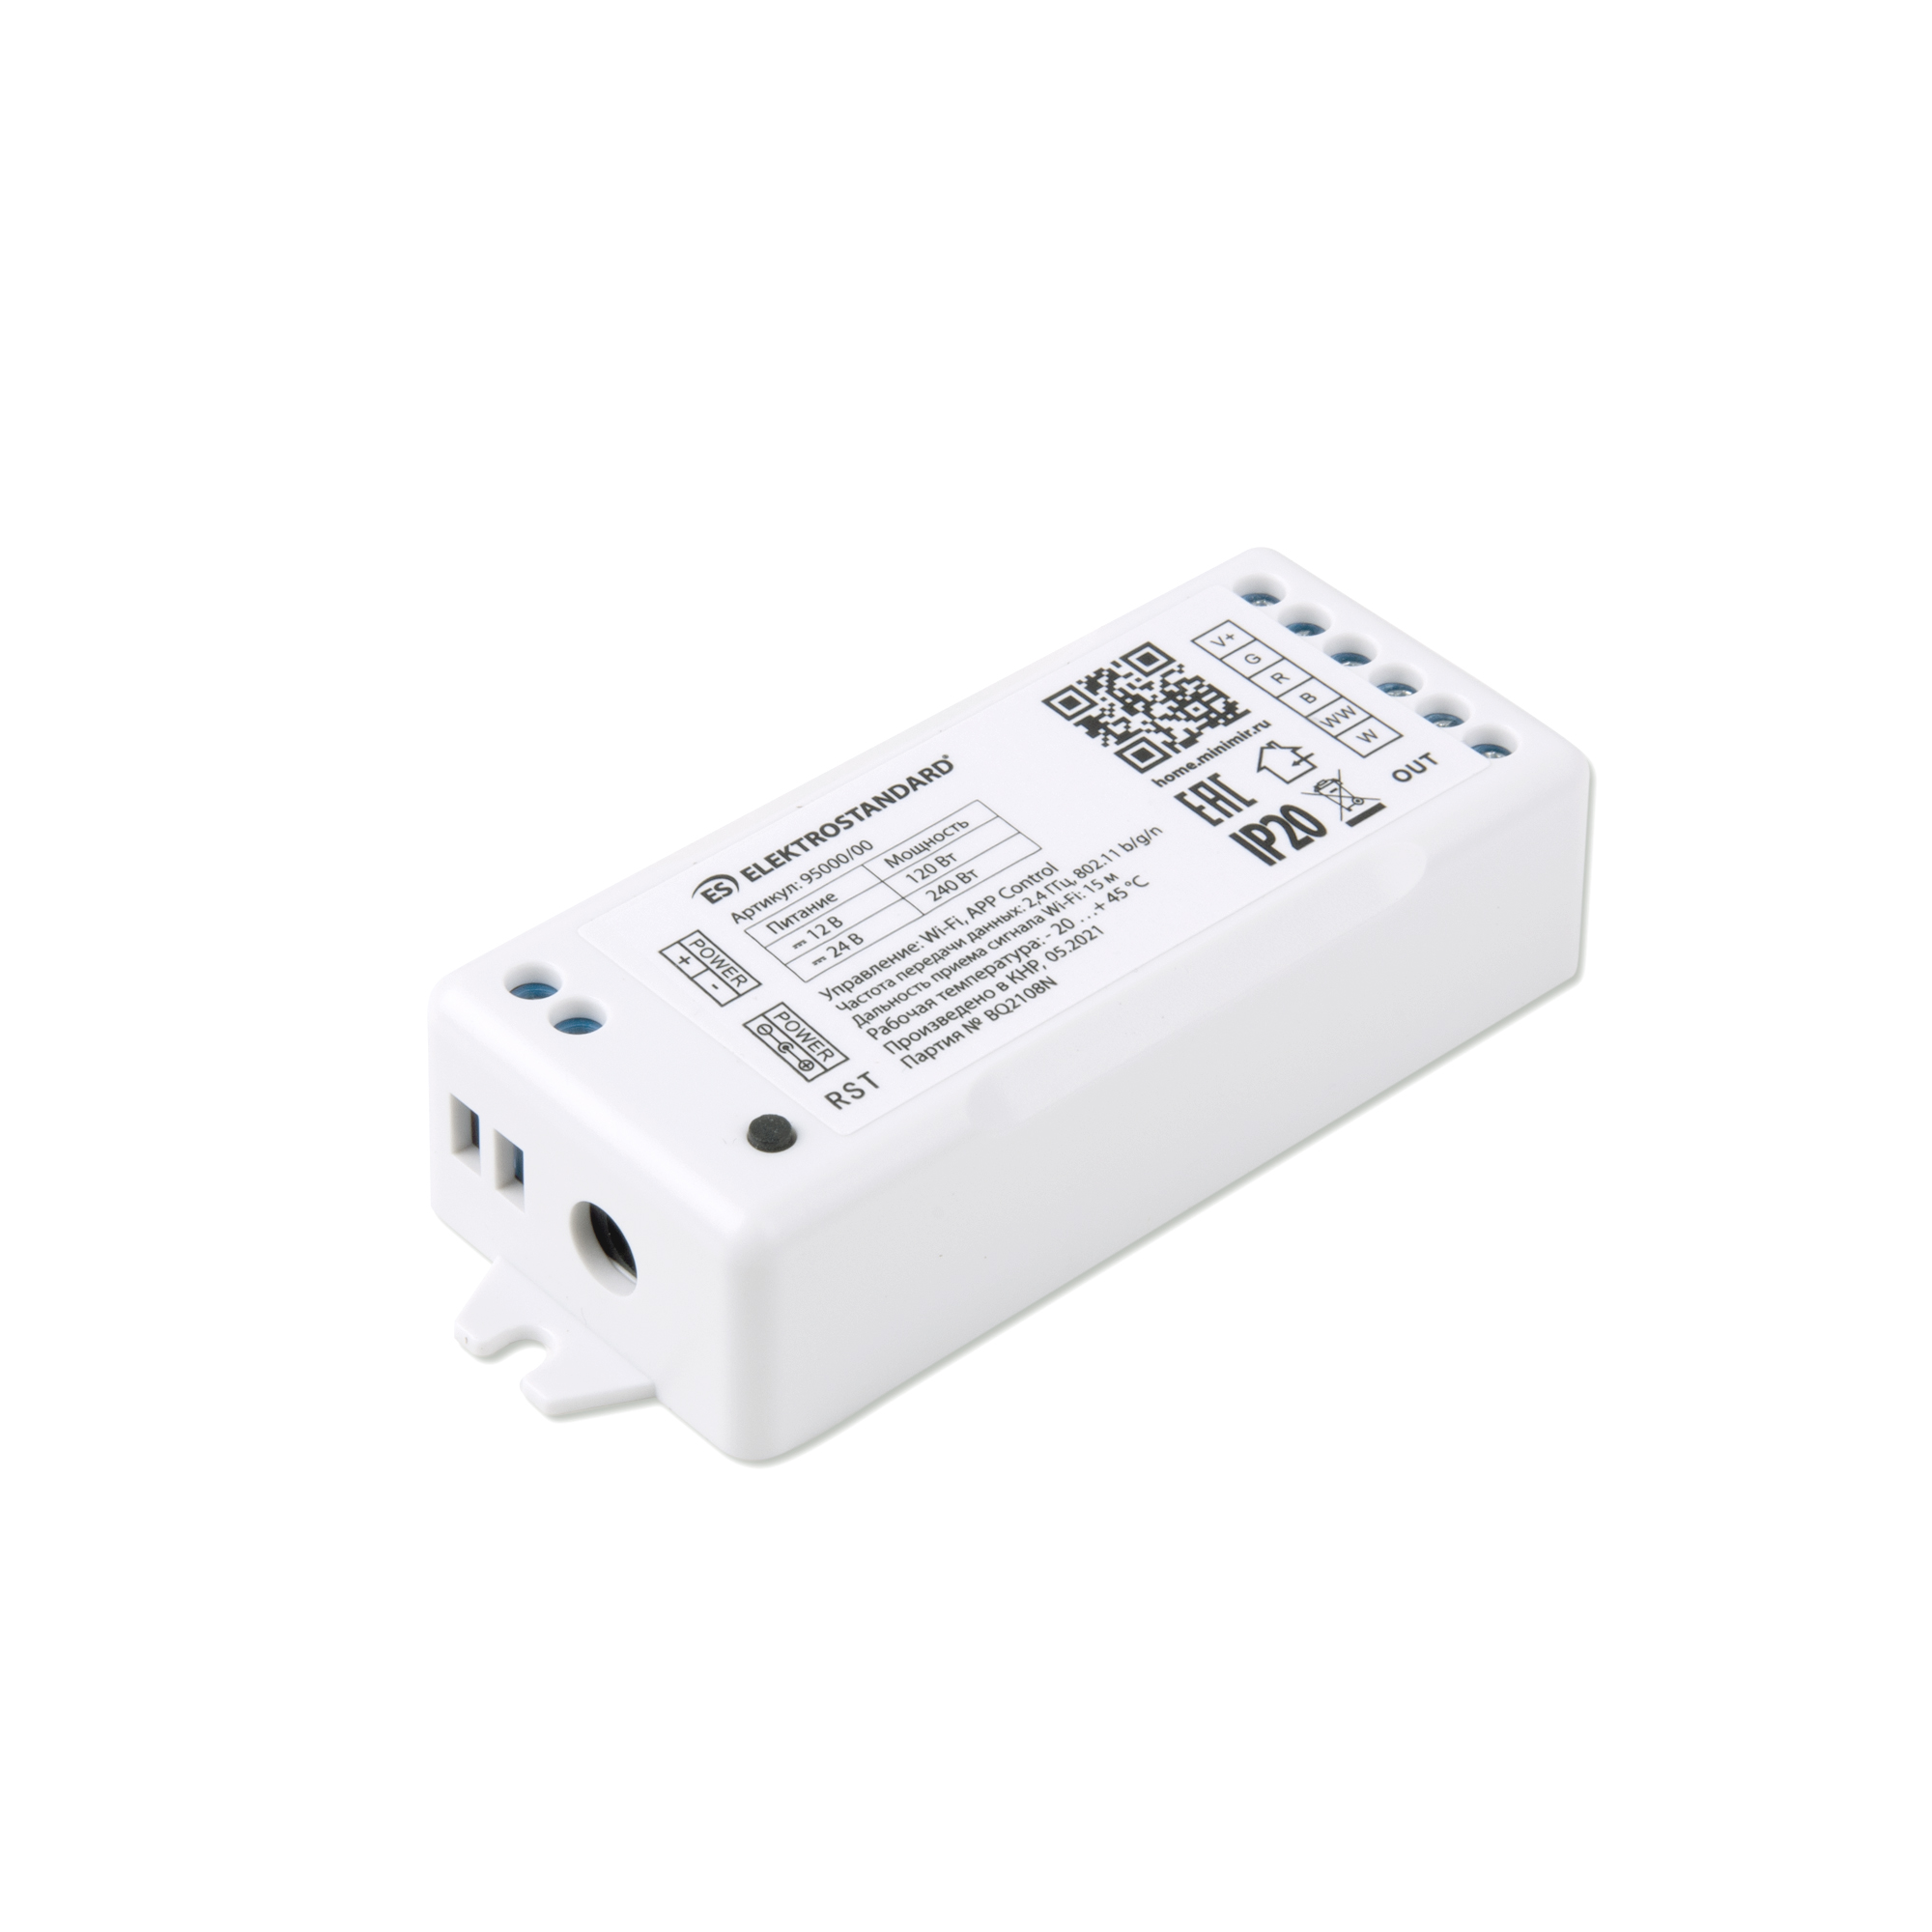 Умный контроллер для светодиодных лент RGBWW 12-24V Elektrostandard 95000/00 Minimir Home умный д